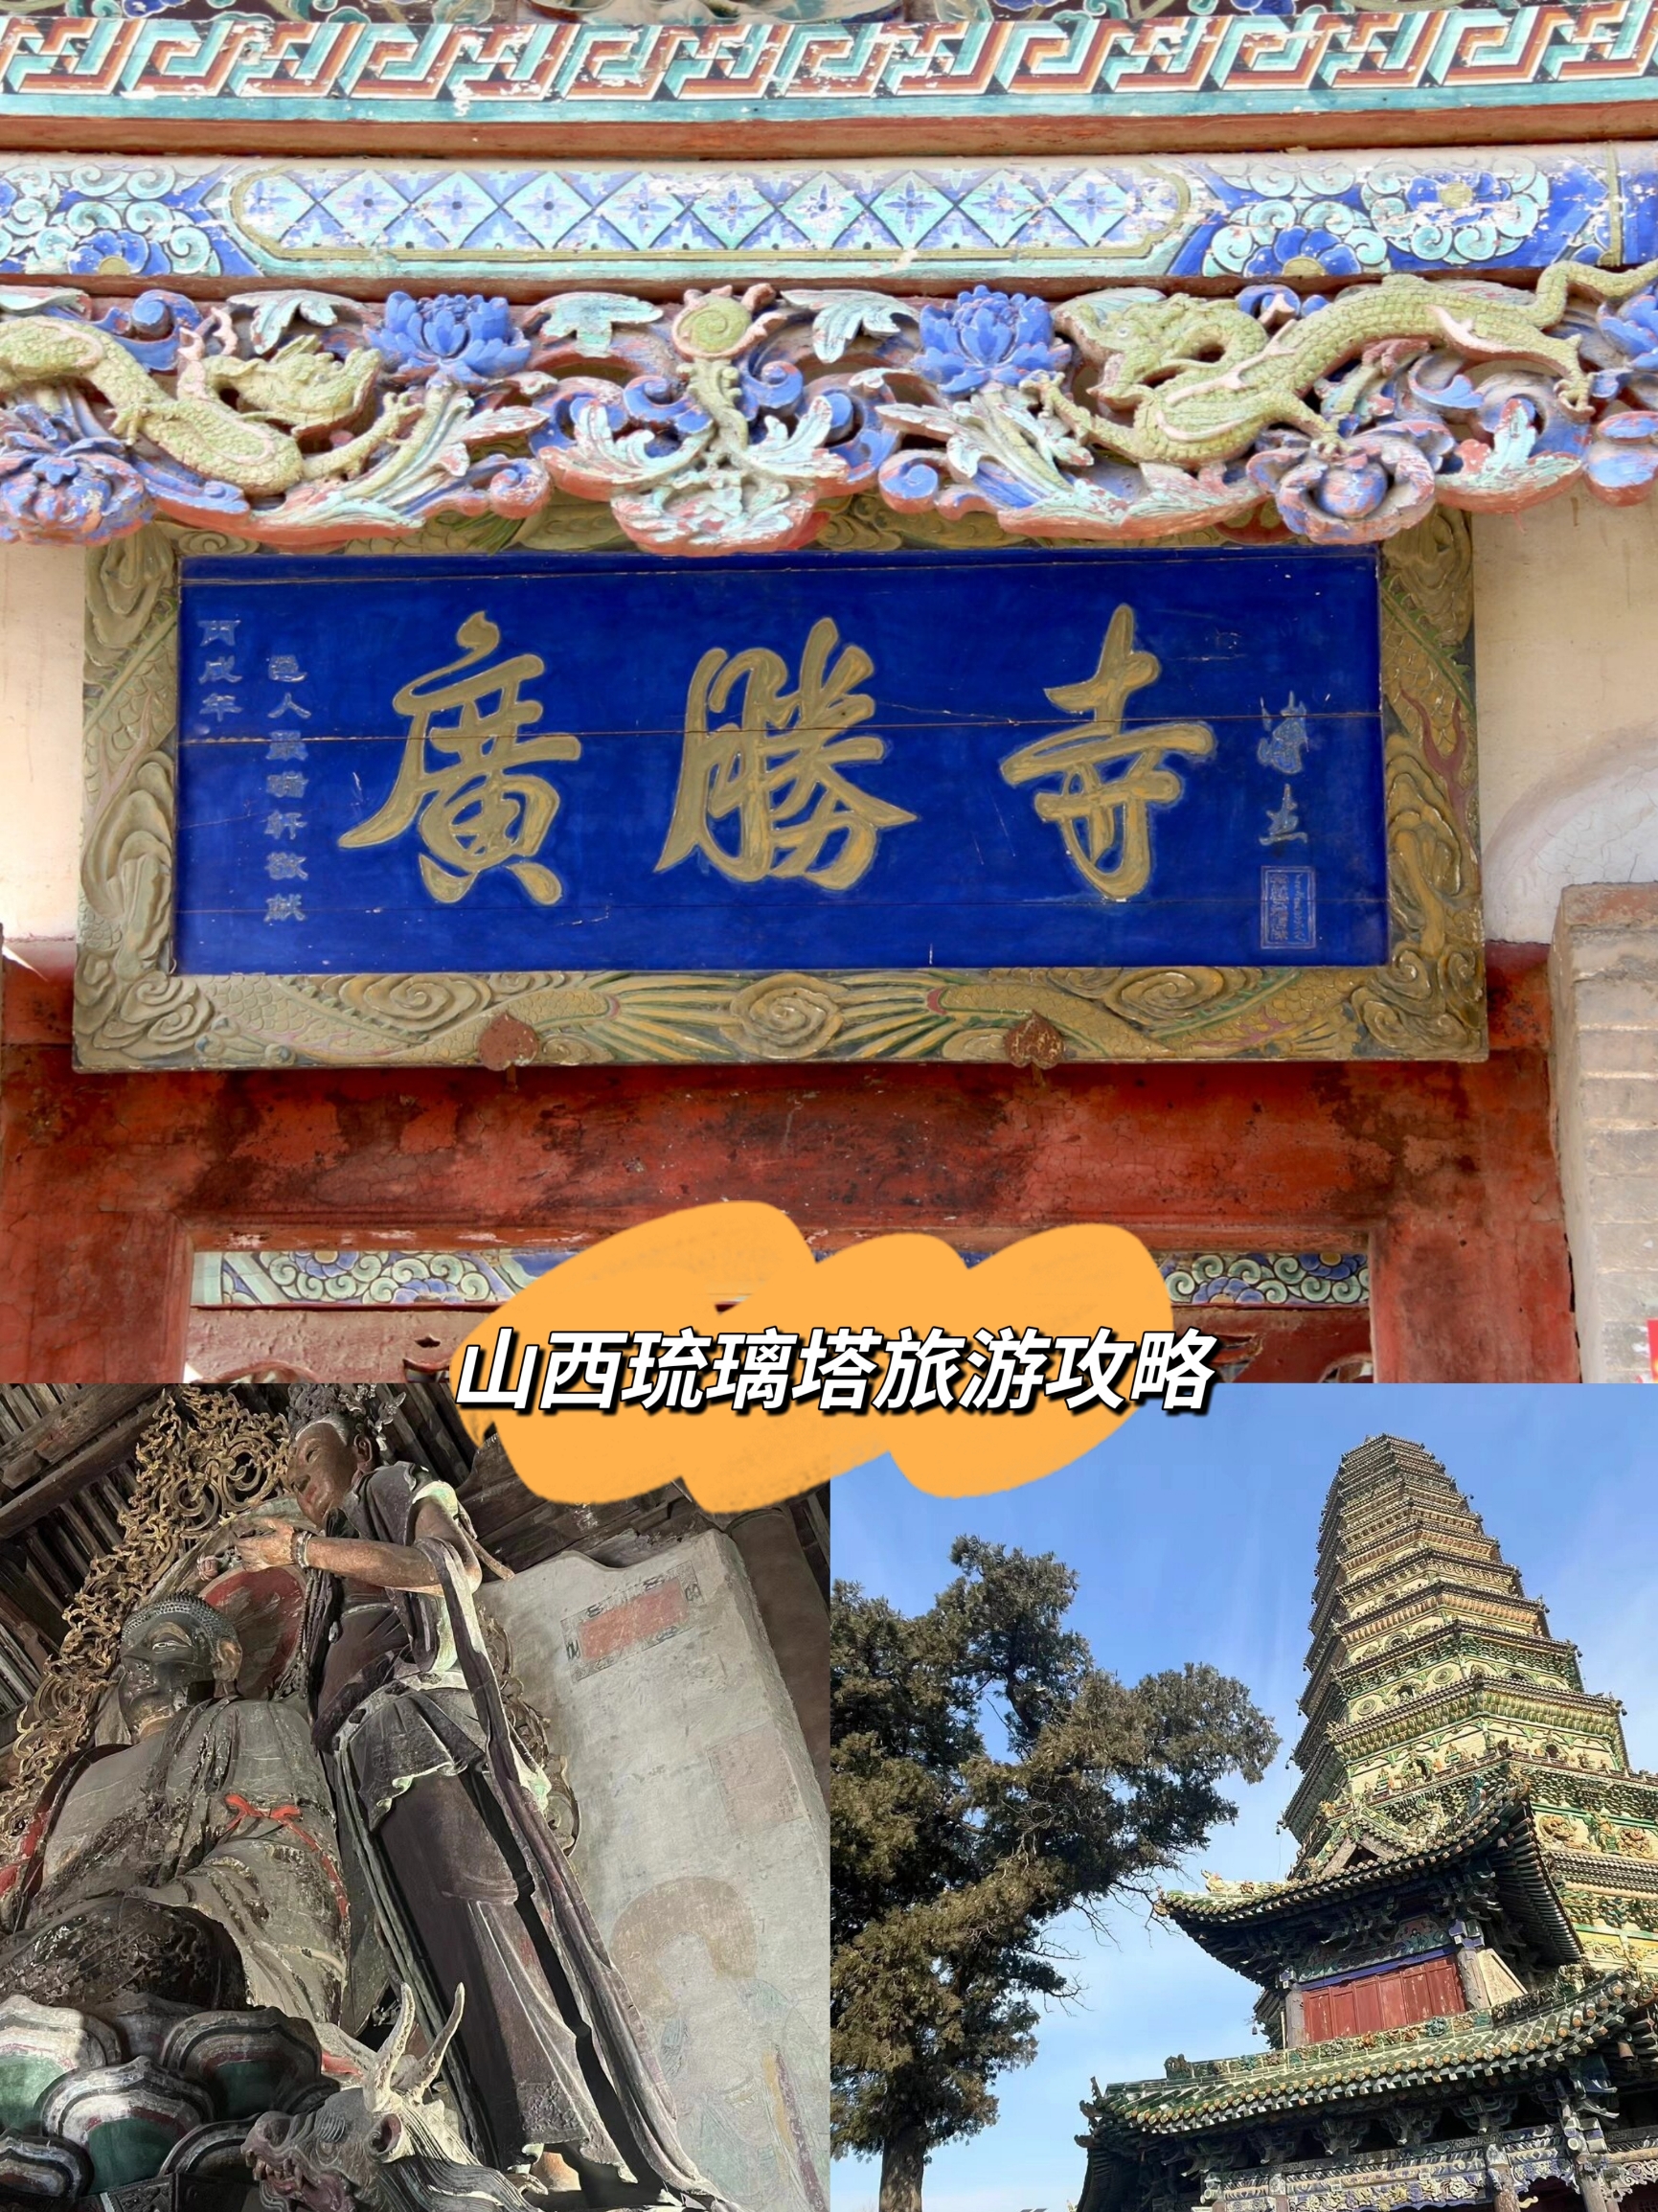 “宝”藏广胜寺：探索七彩琉璃塔与珍贵文物的奇妙之旅😉。